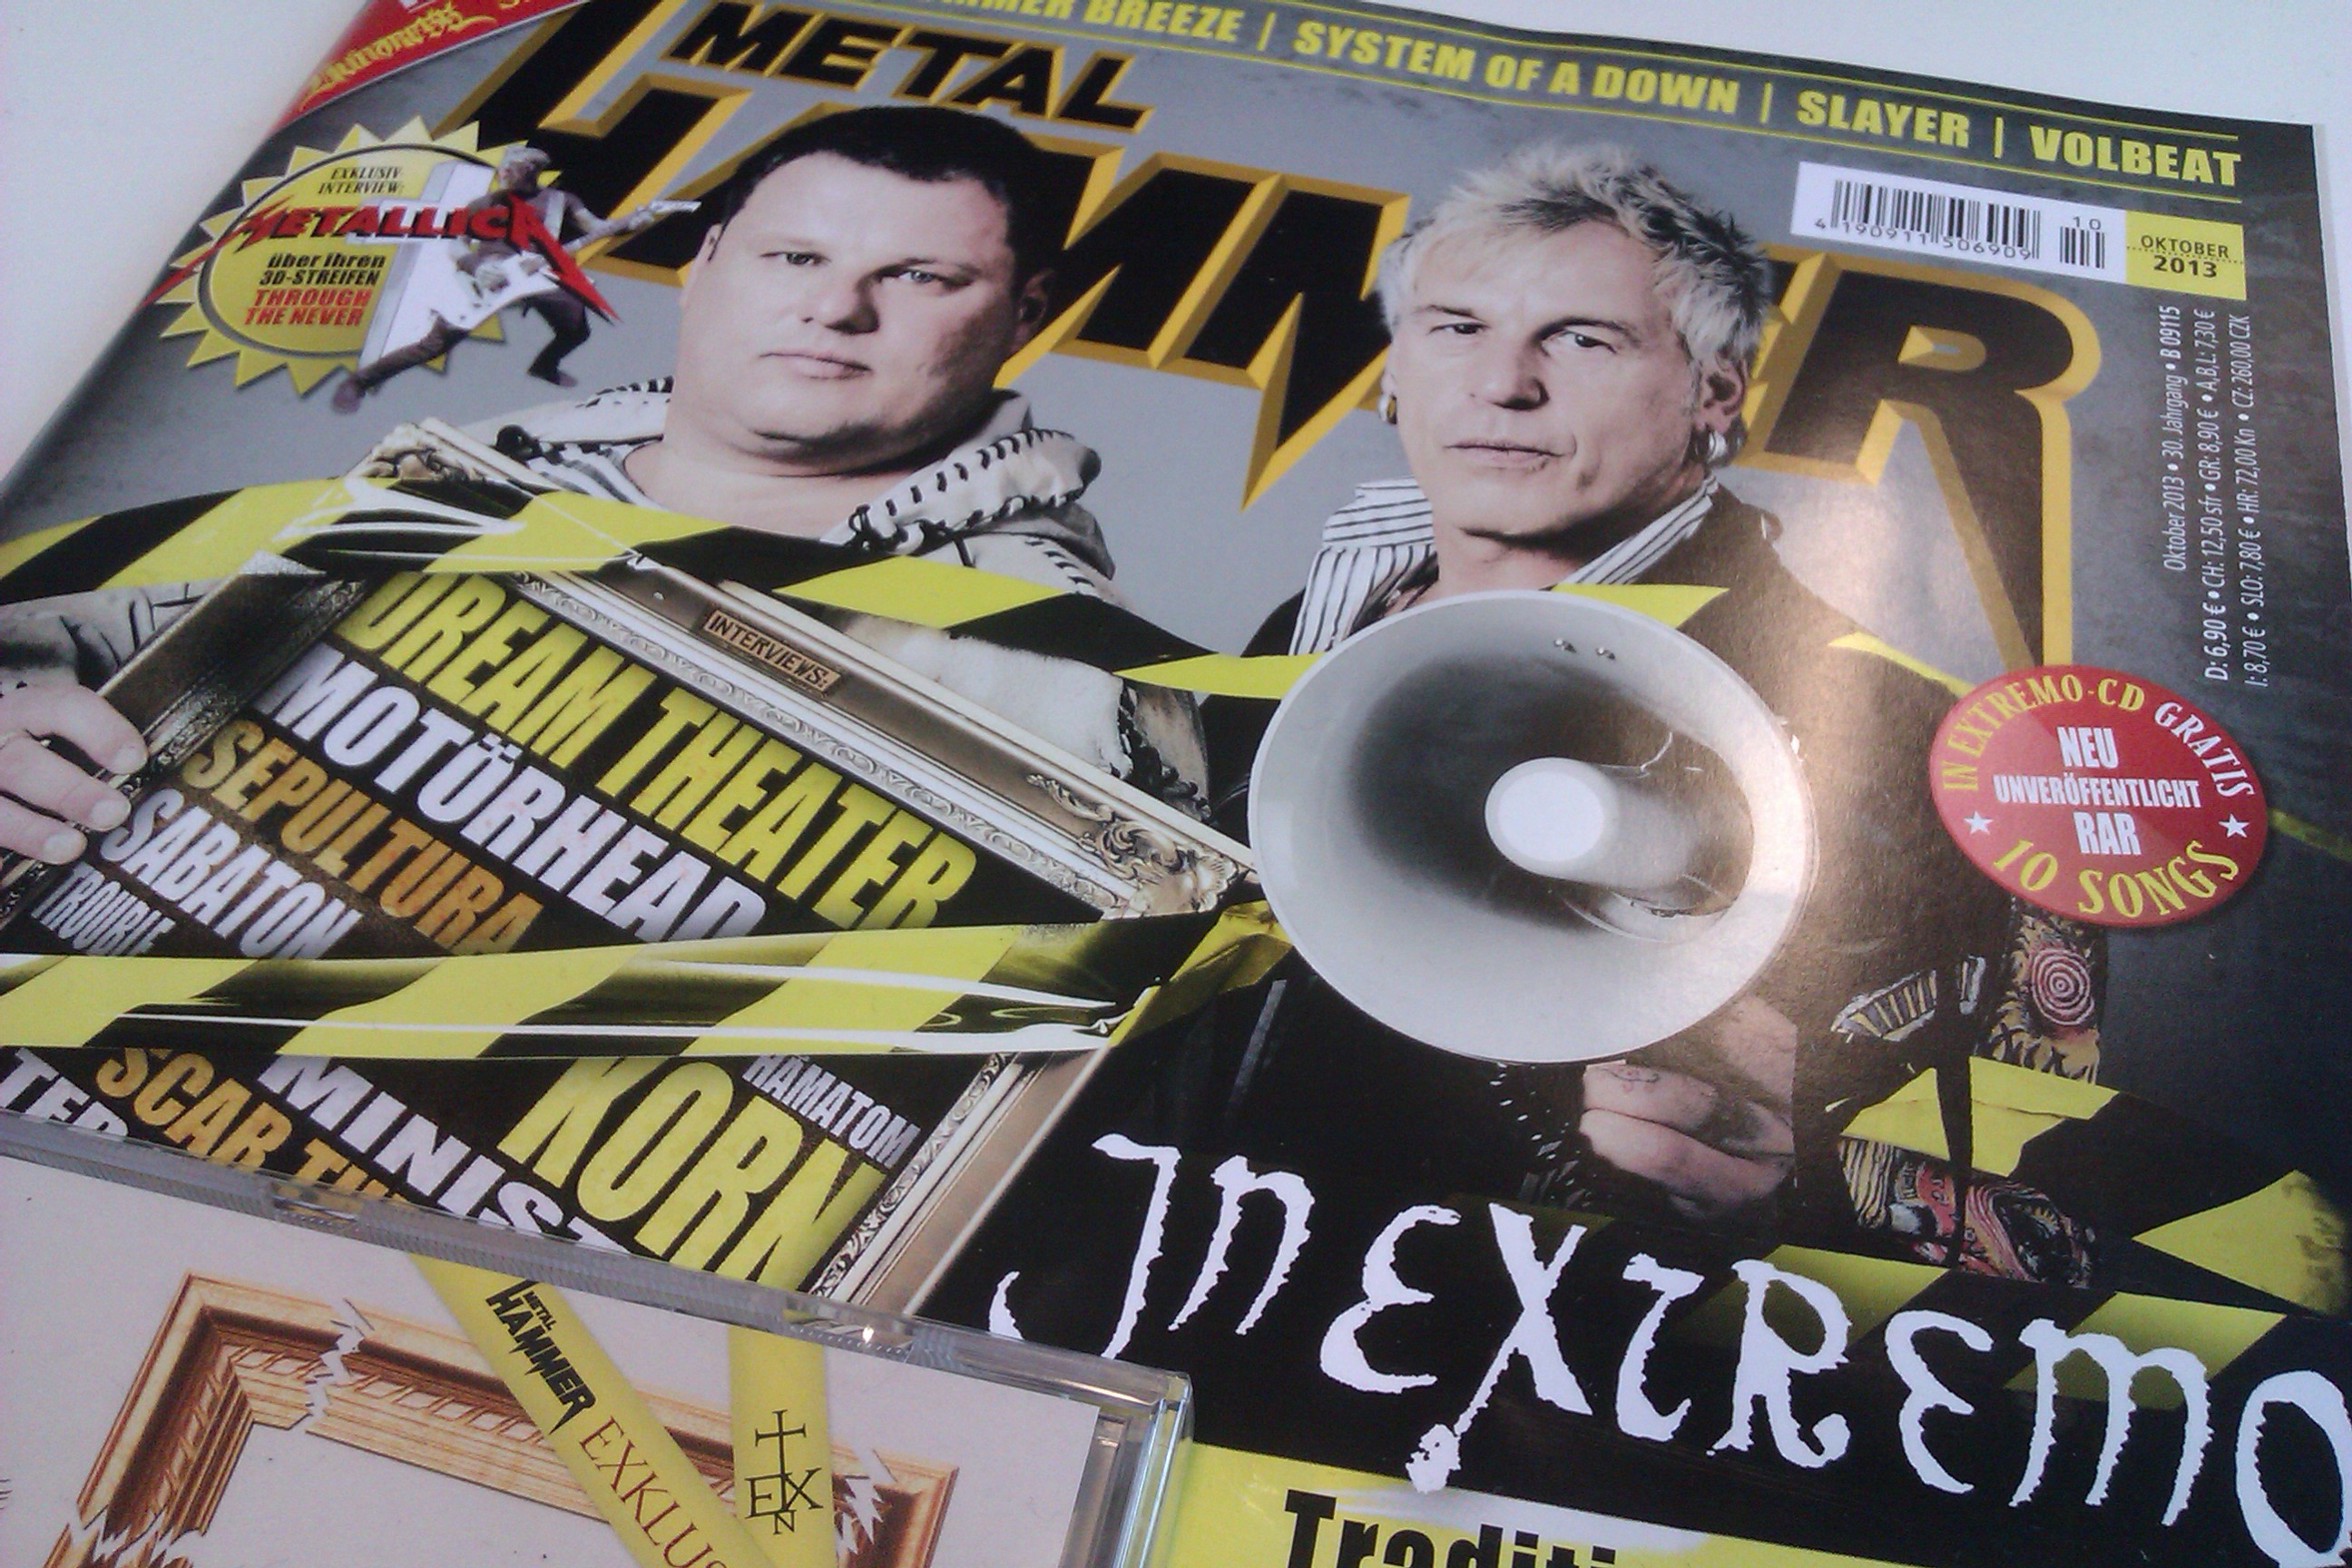 METAL HAMMER-Ausgabe 10/2013